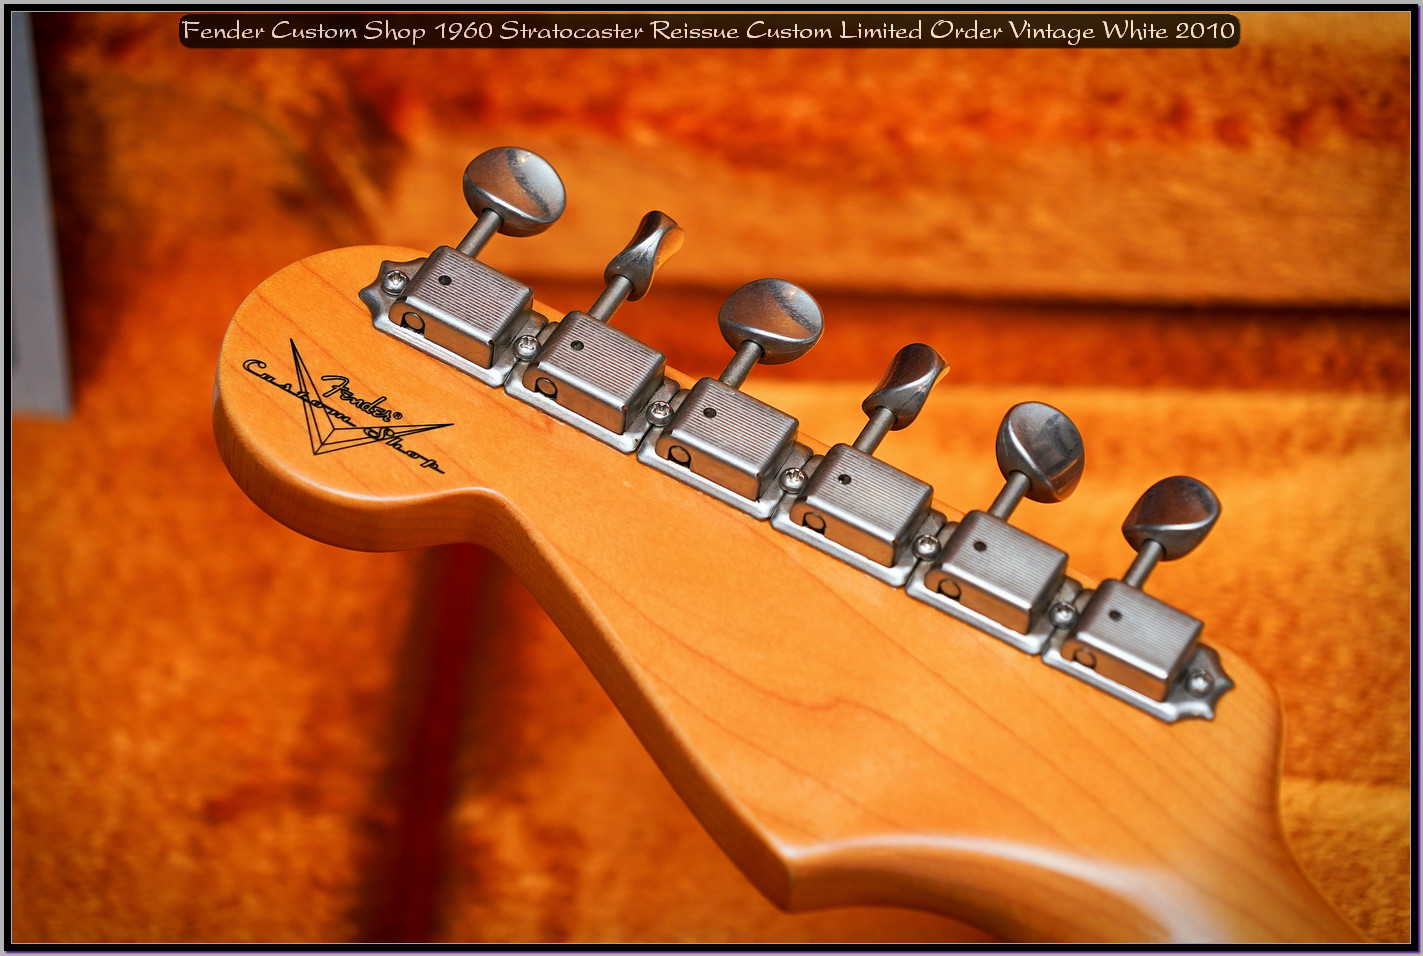 Fender Custom Shop 1960 Stratocaster Reissue Custom Limited Order Vintage White 2010 21_x1400.jpg